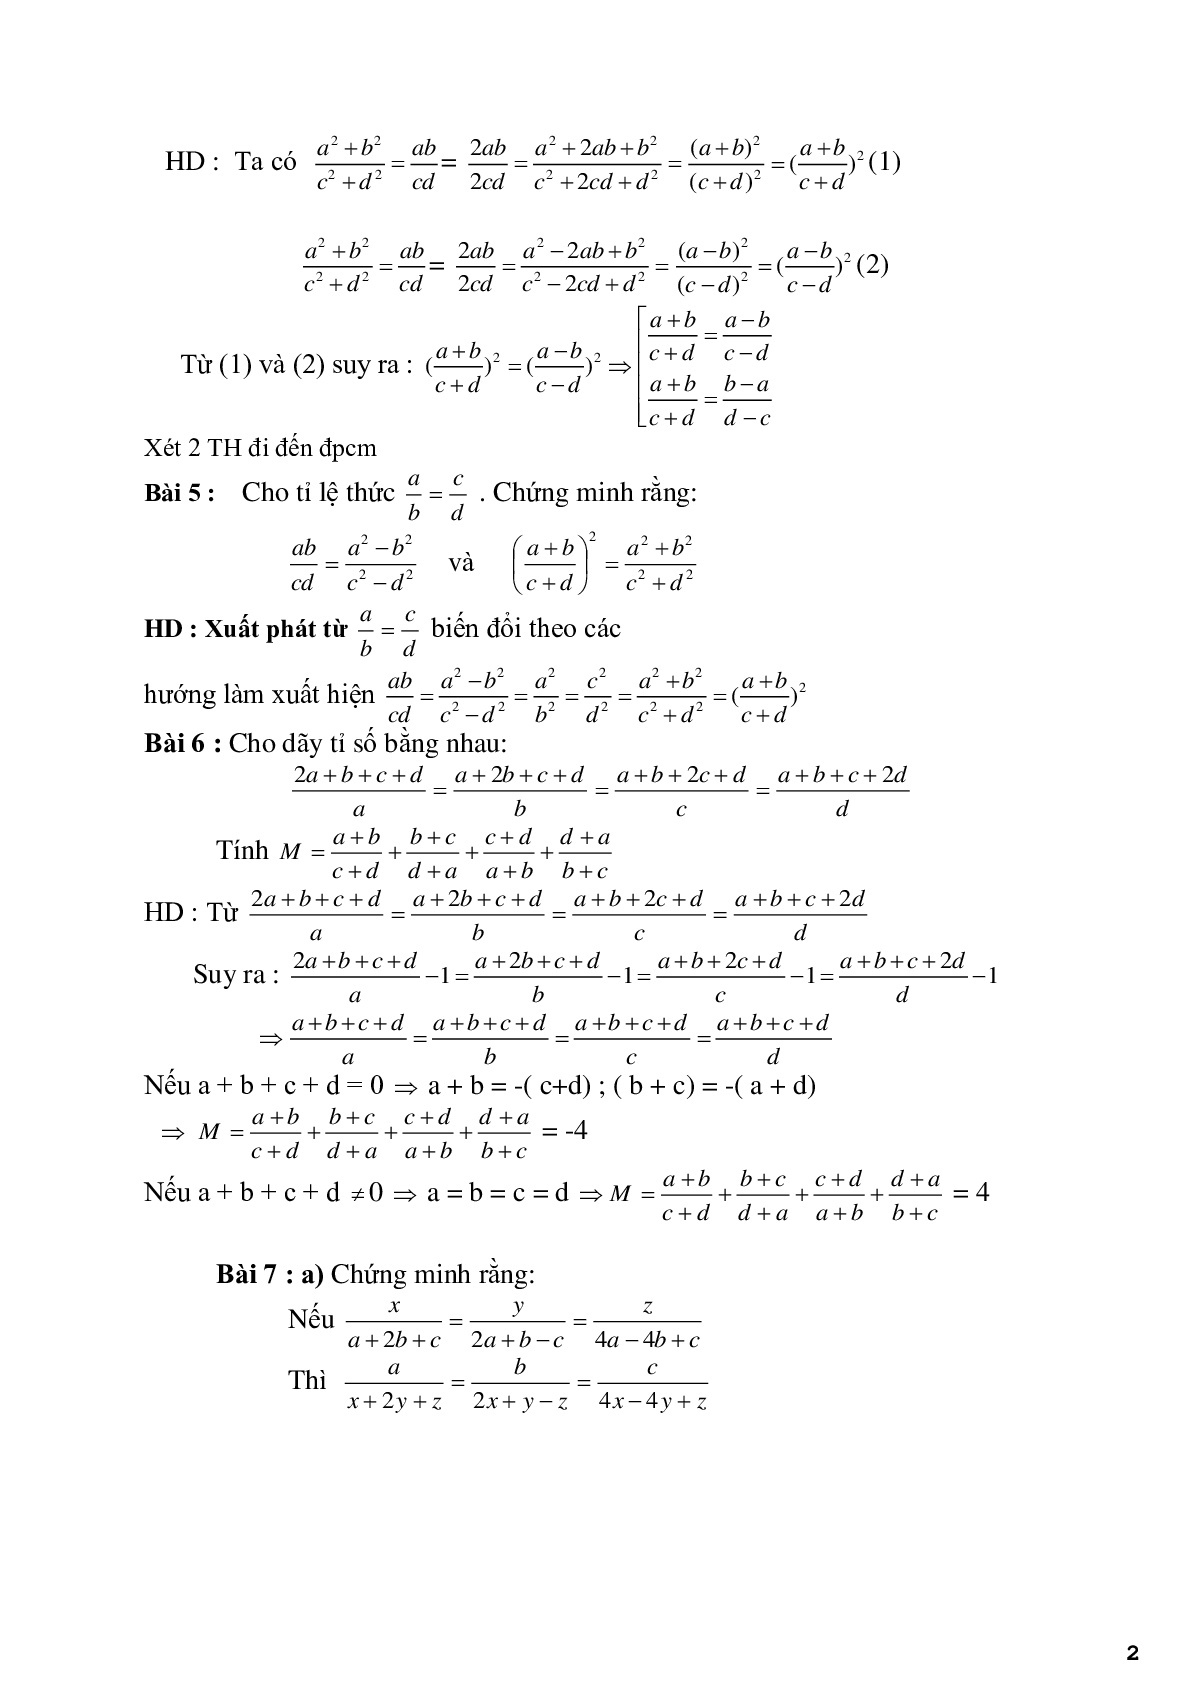 Chuyên đề 2 - Bài toán về tính chất của dãy tỉ số bằng nhau - có đáp án (trang 2)